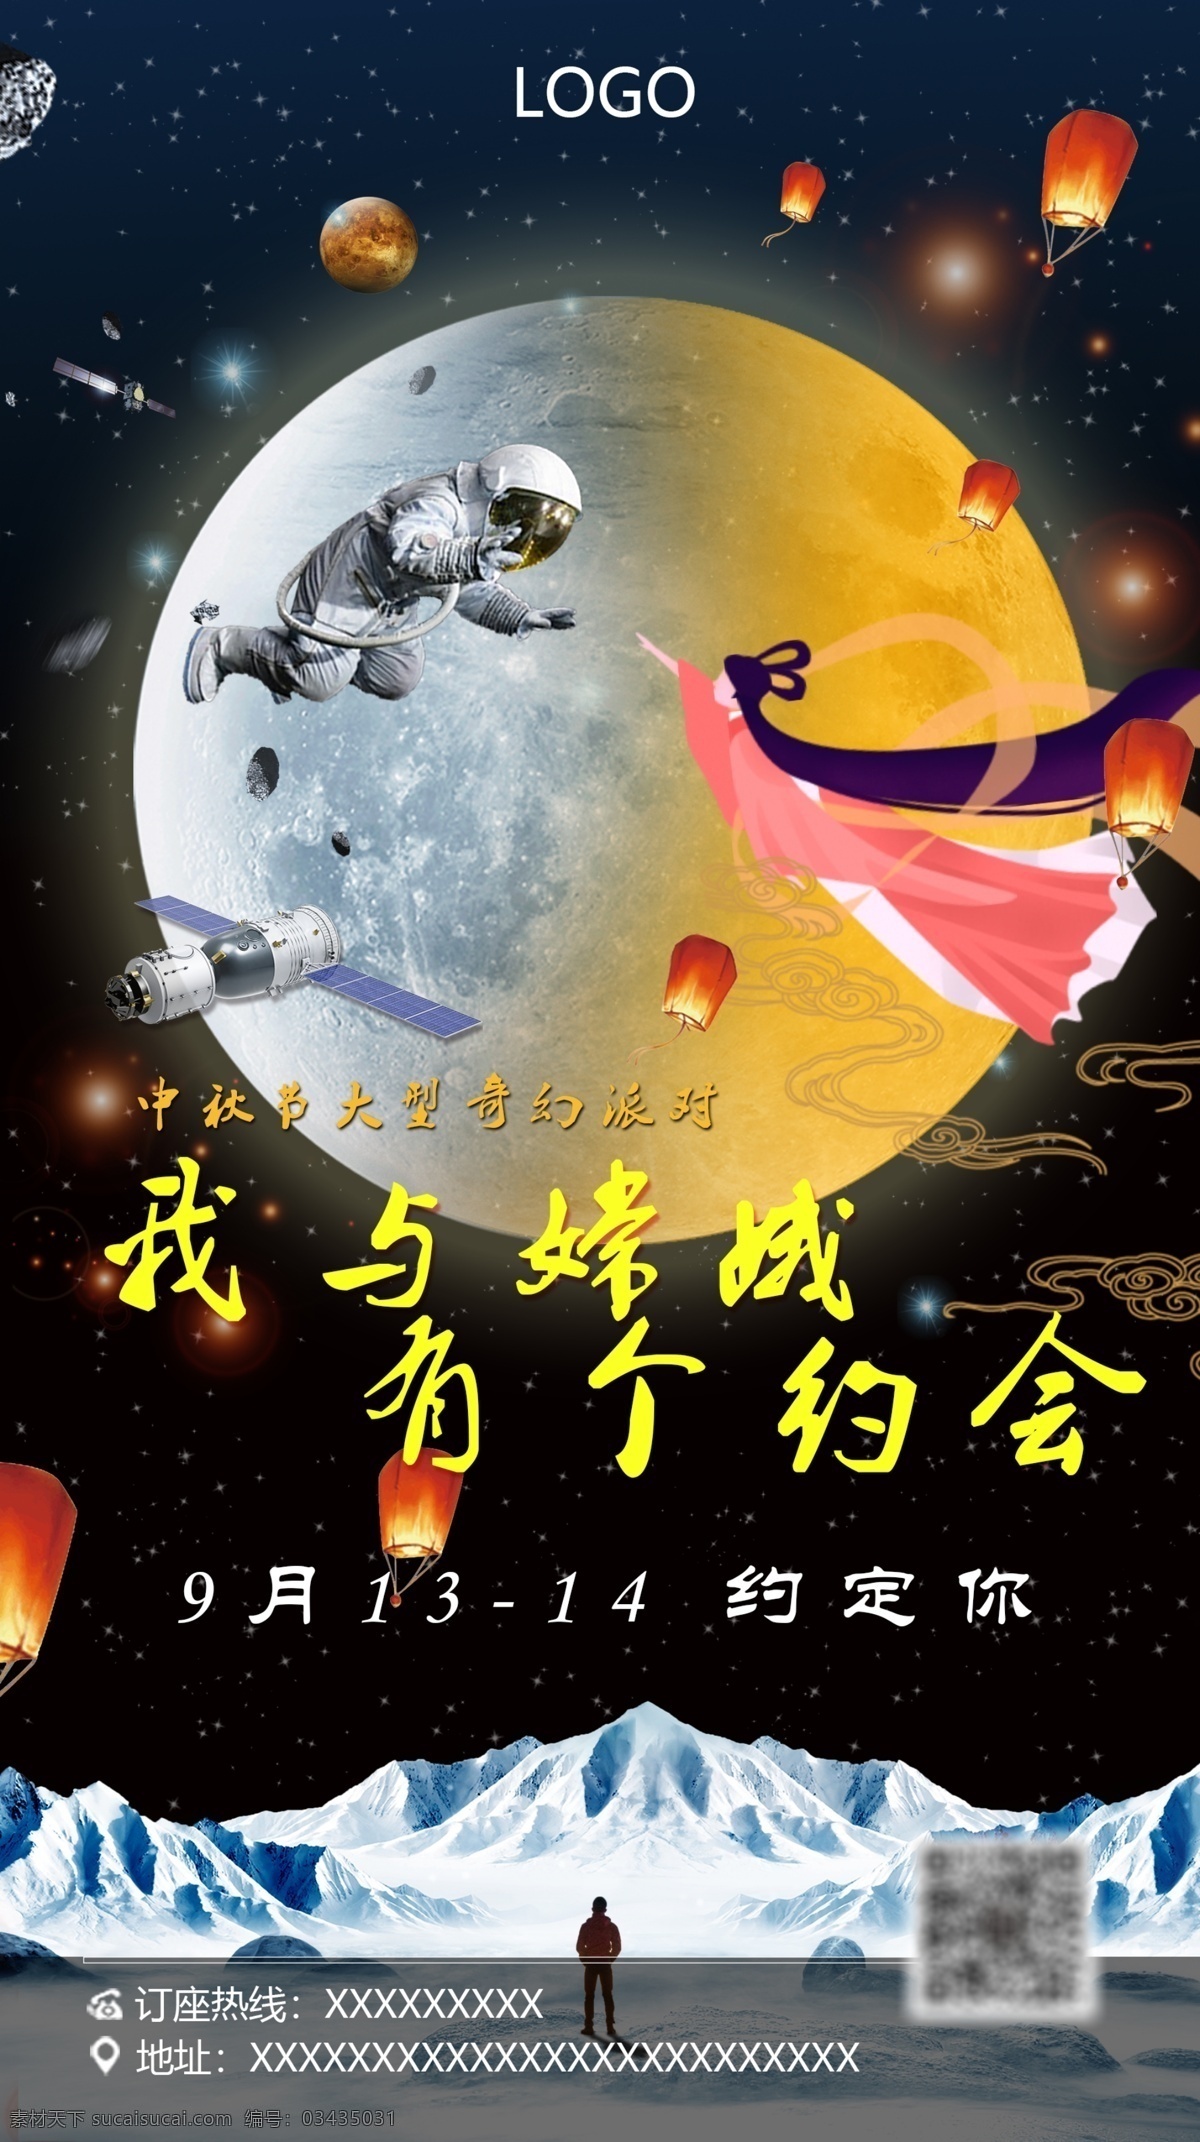 中秋节 我与 嫦娥 约会 派对 酒吧海报 八月十五 登月 宇航员 月球 酒吧派对